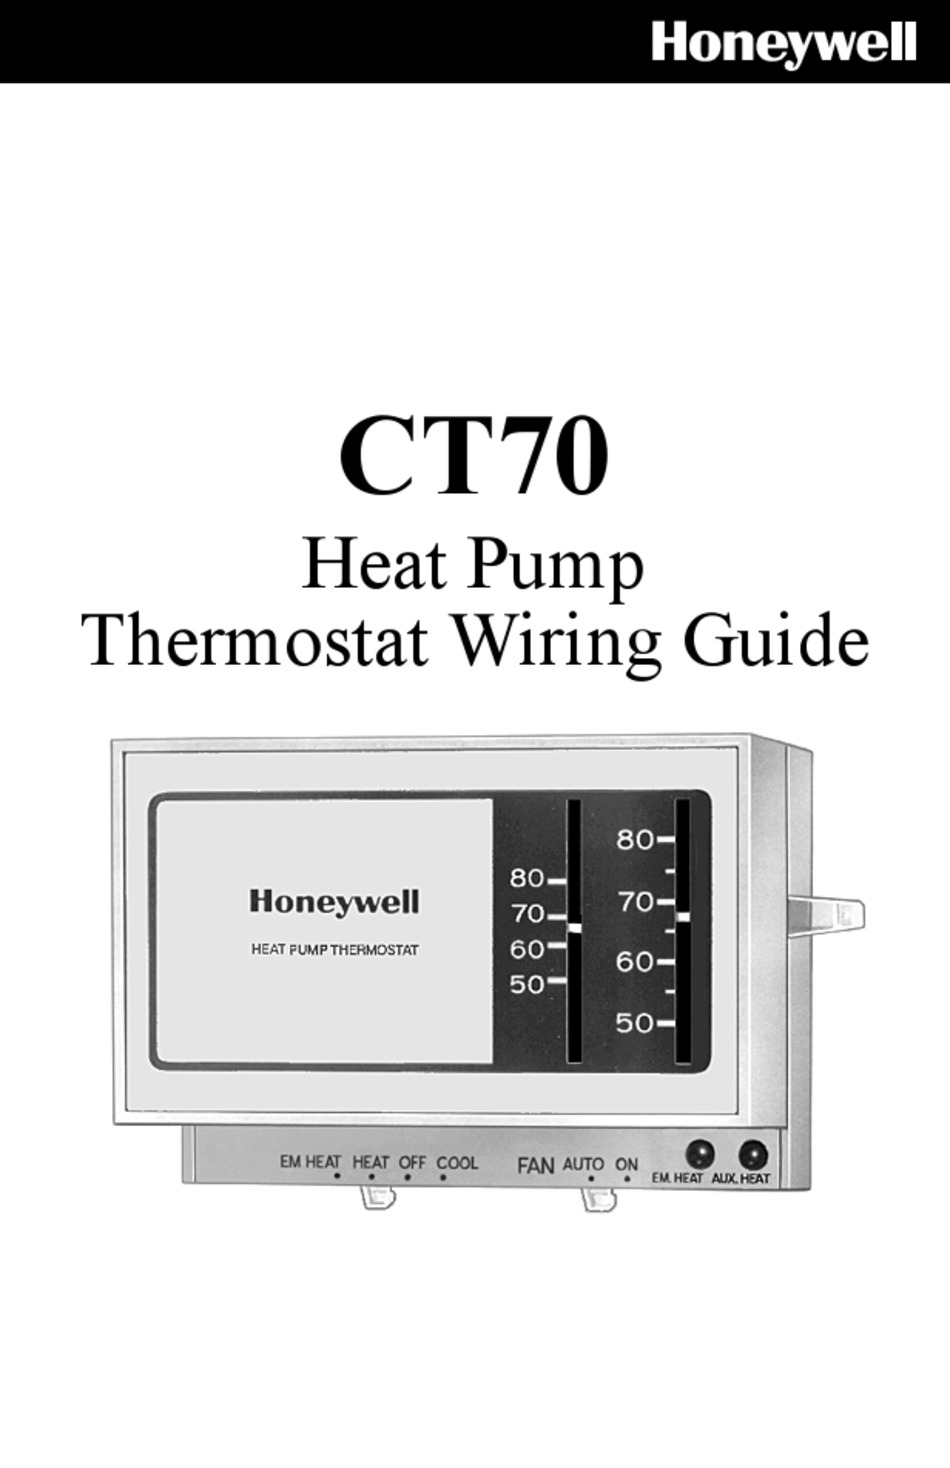 Honeywell Ct70 Wiring Manual Pdf Download Manualslib